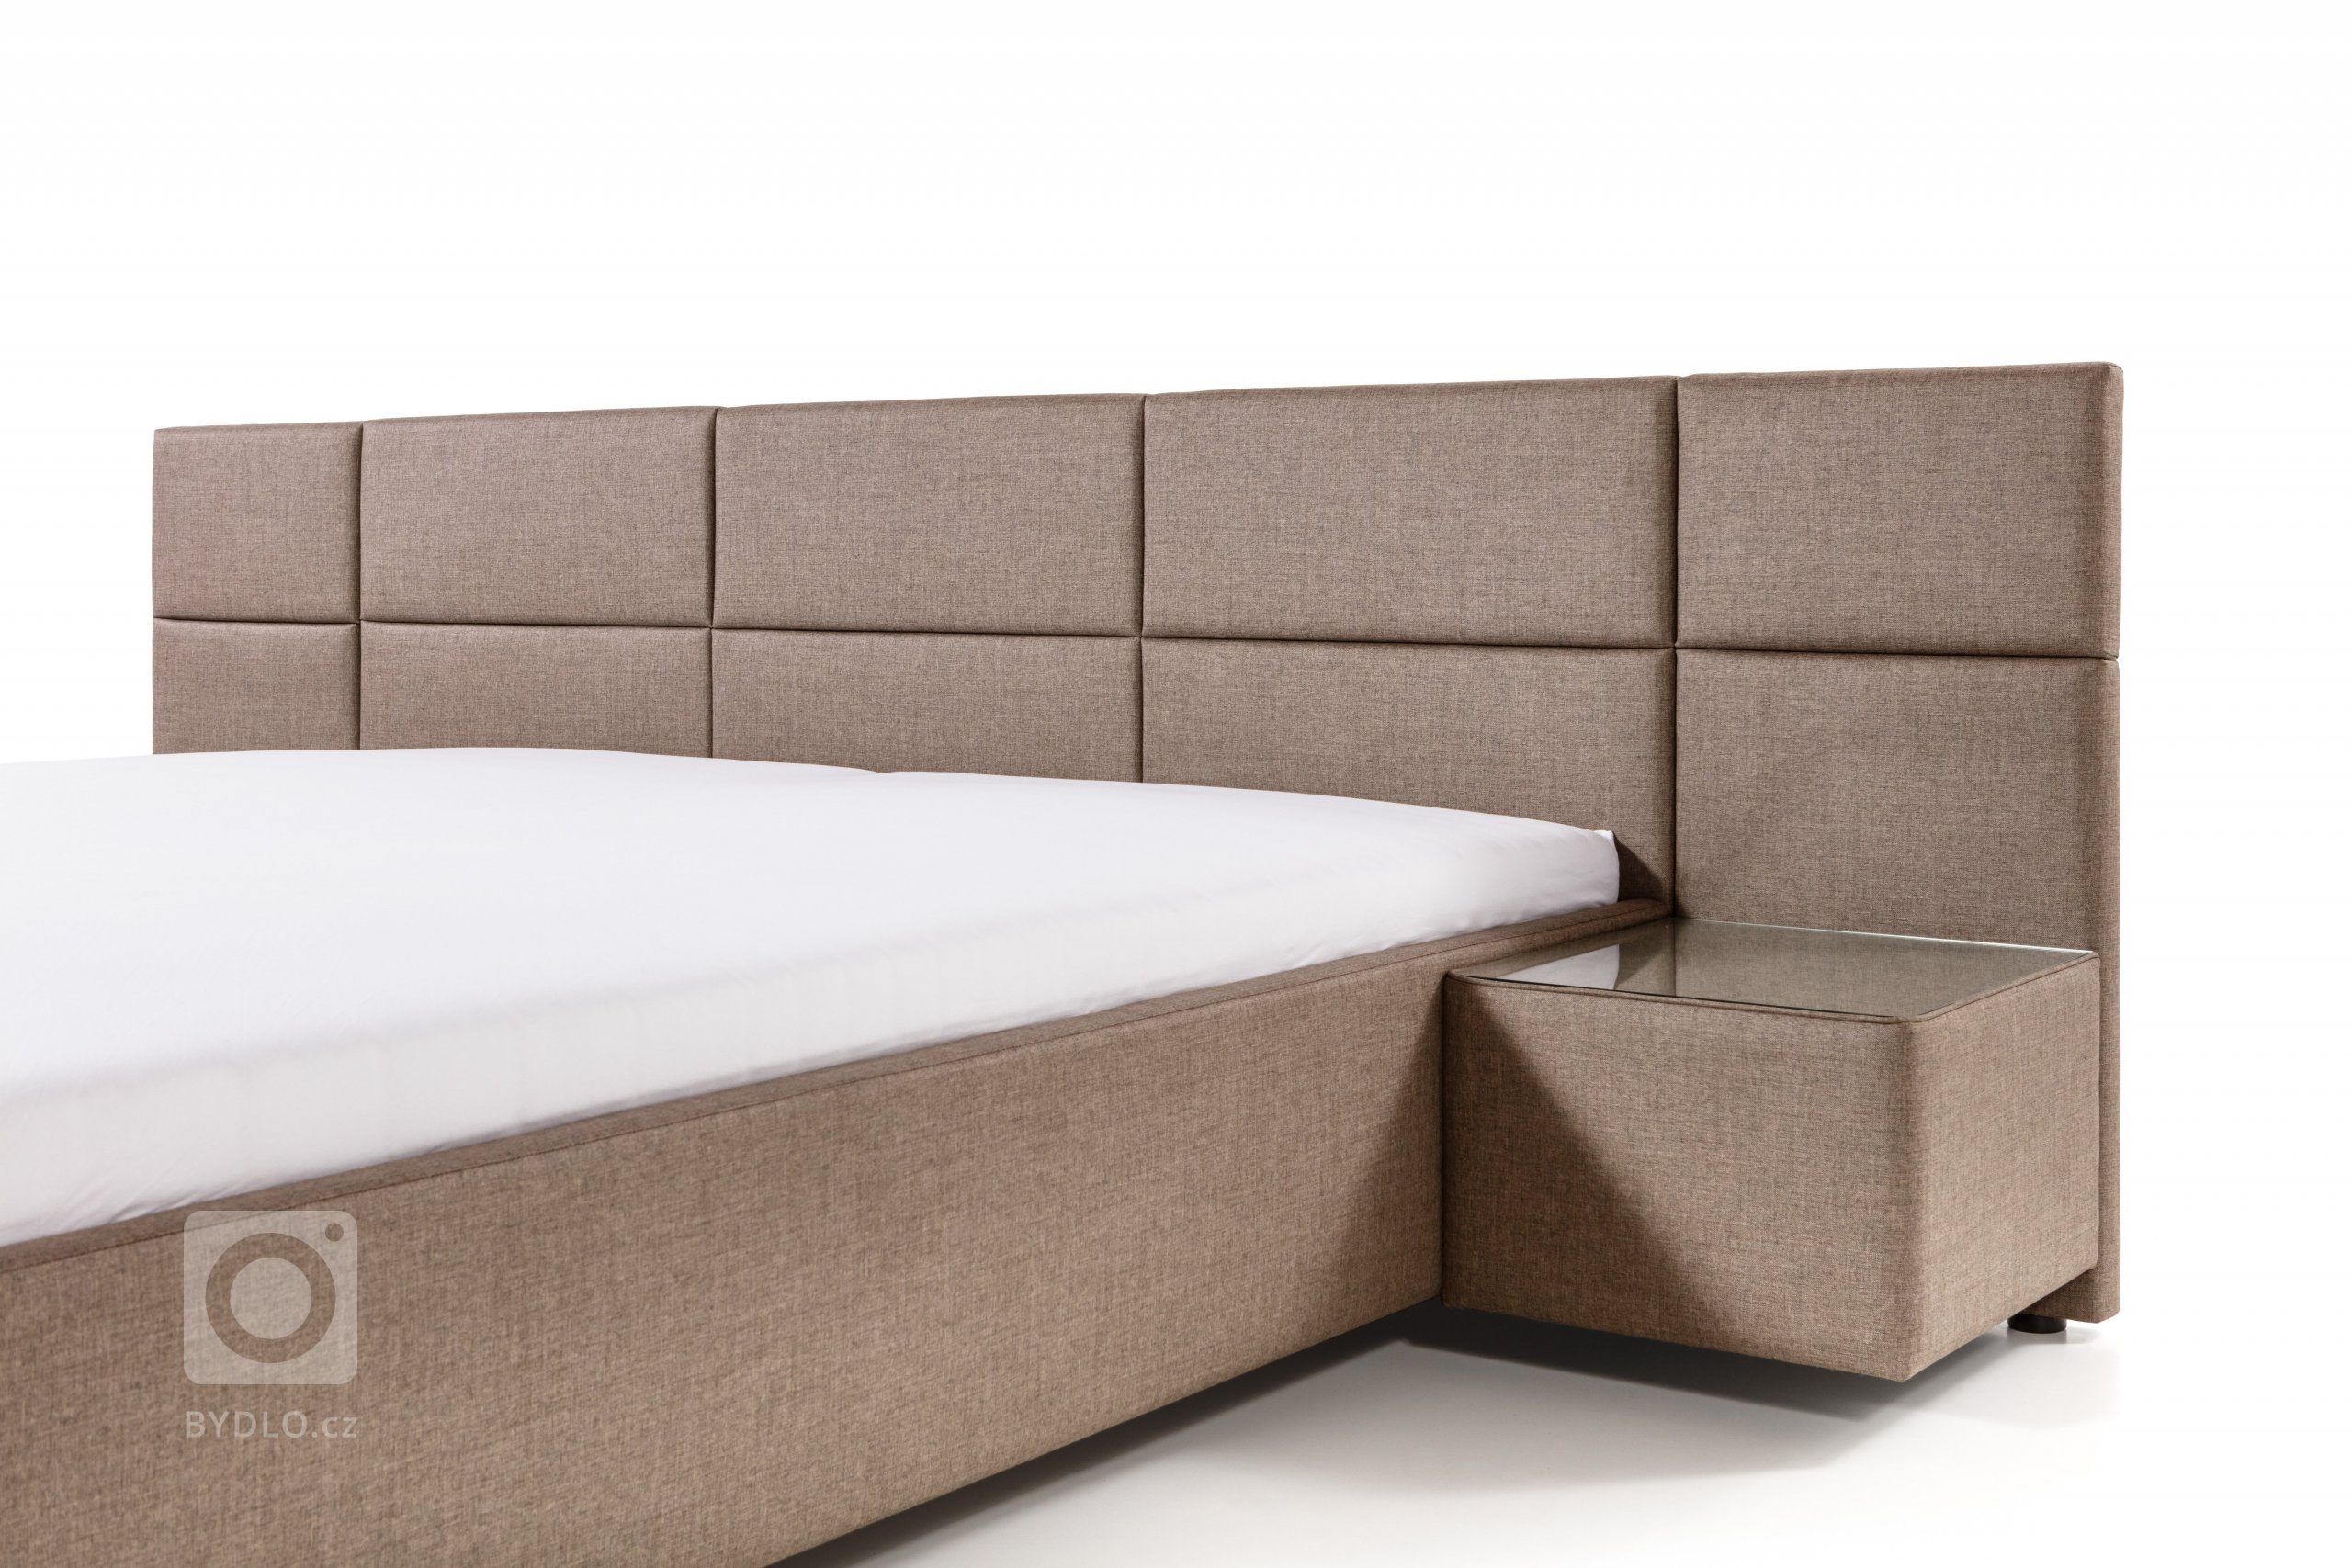 Čalouněná postel s čelem poskládaným ze symetrických obdélníků. Lze přidat noční stolky.

- stabilní pevná konstrukce
- pohodlná výška pro vstávání 45 cm
-…